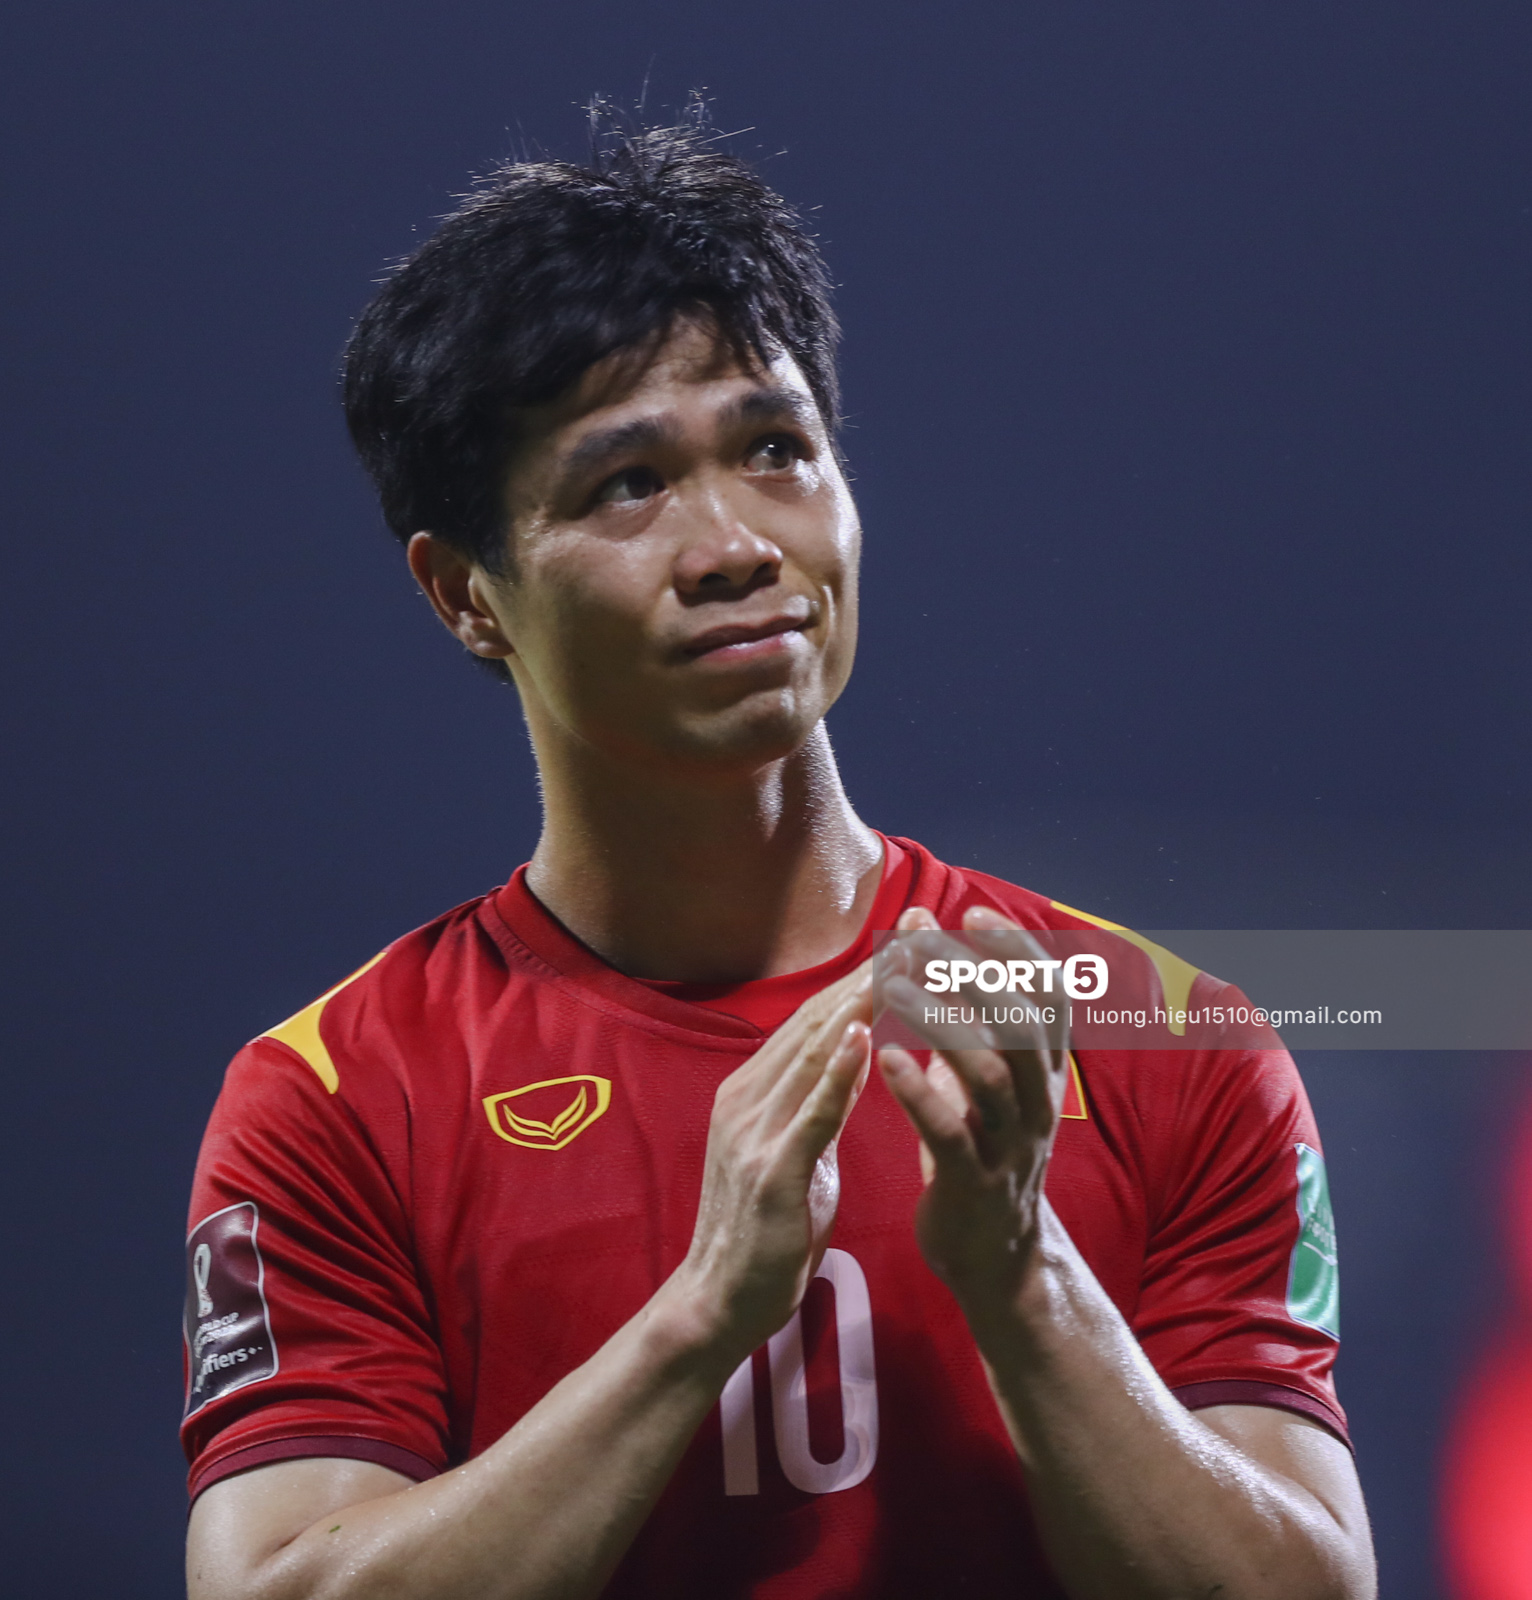 Ban huấn luyện UAE xếp hàng, vỗ tay động viên tuyển Việt Nam sau thất bại - Ảnh 3.